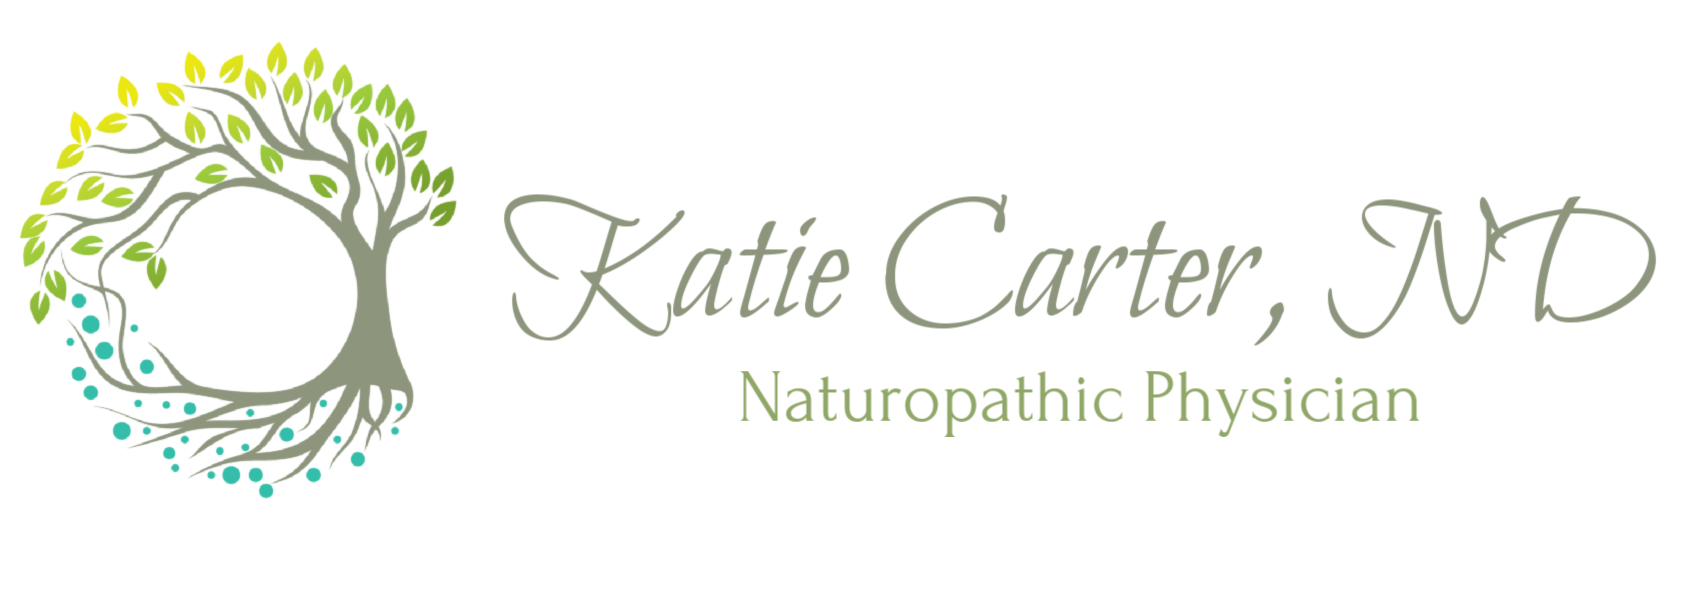 Dr Katie Carter